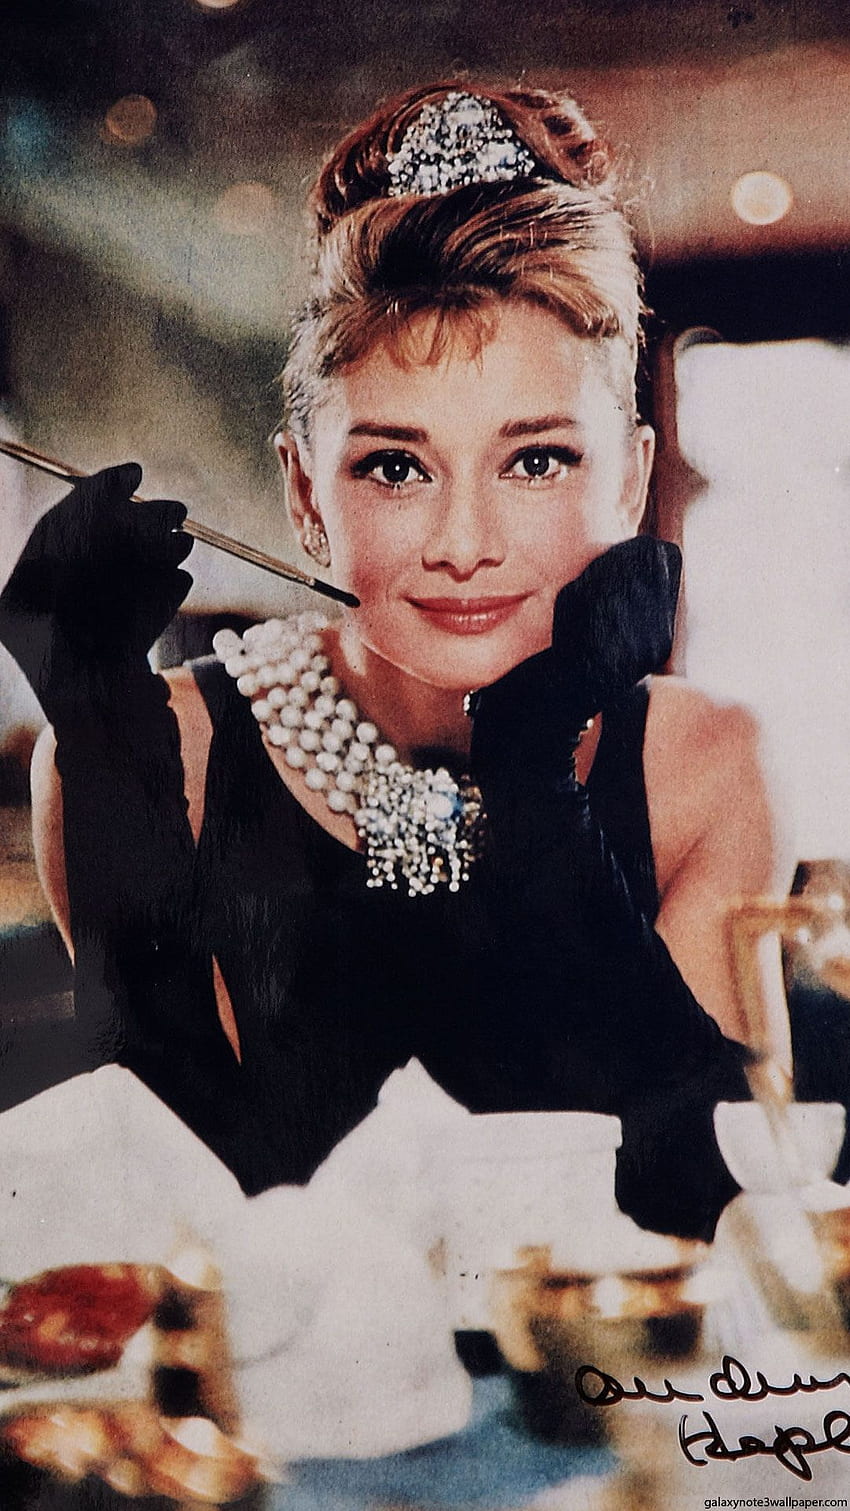 1920x1080px, 1080P Free download | Audrey Hepburn HD wallpaper | Pxfuel